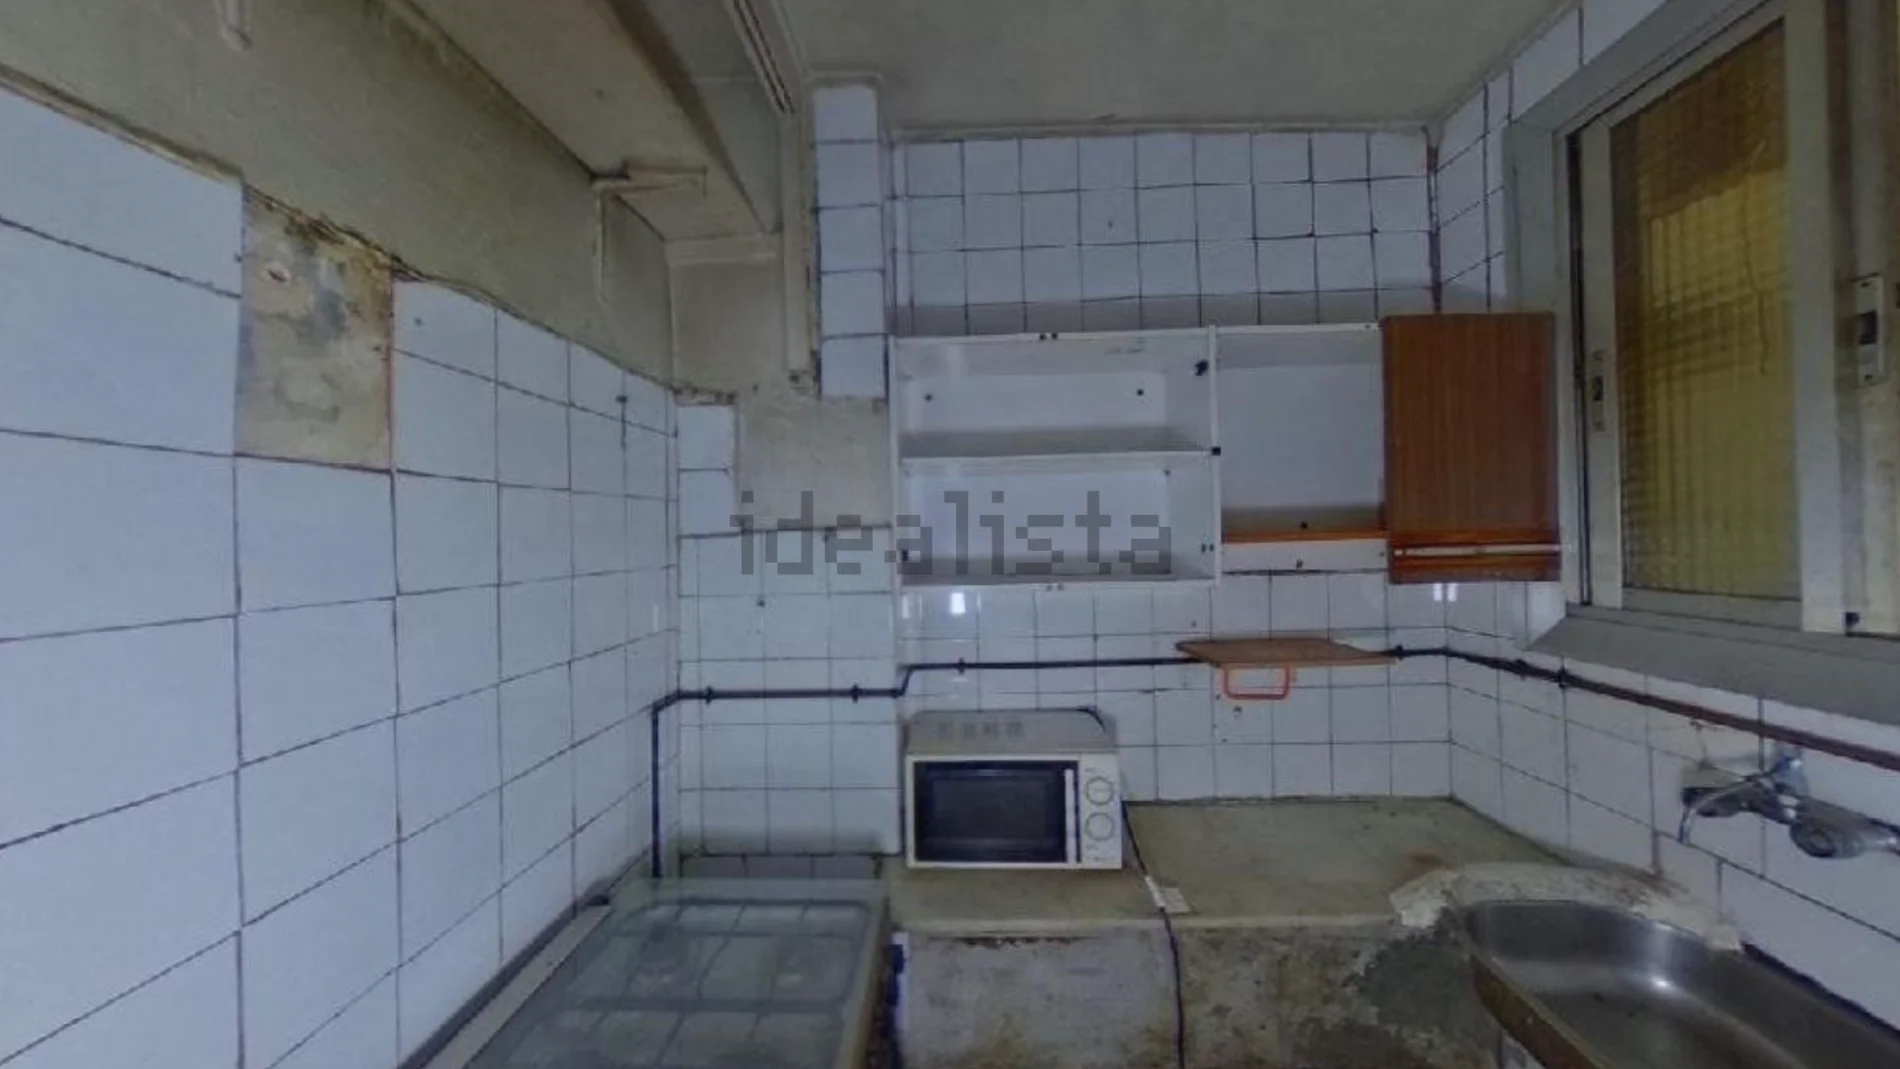 Humedades y habitaciones sin terminar de construir, un nuevo piso en Idealista en Barcelona